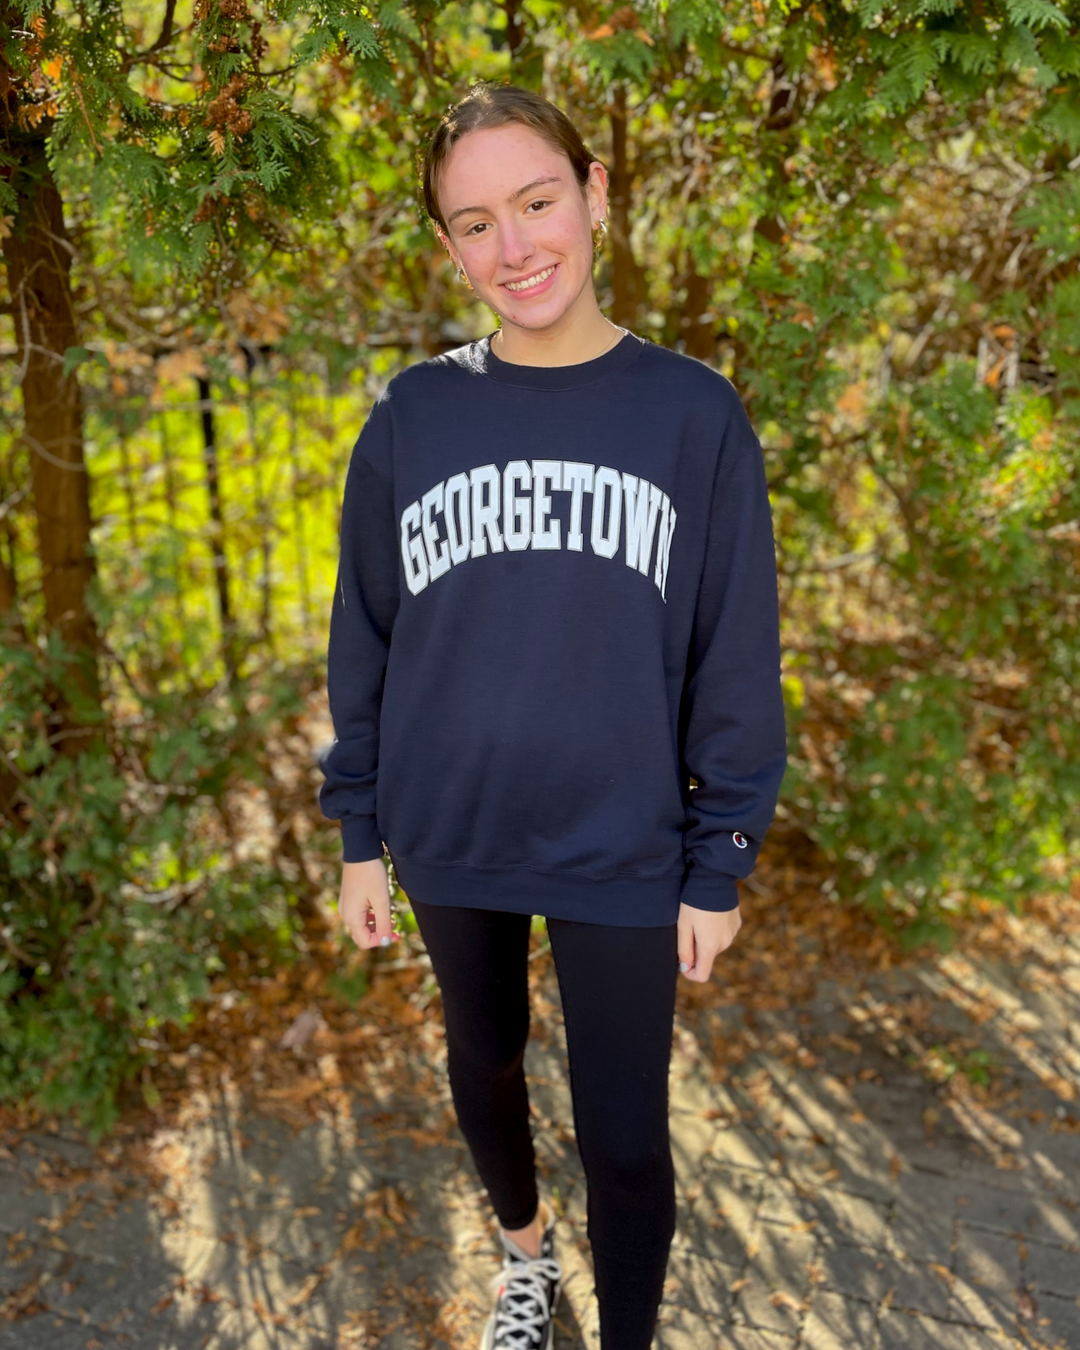 Georgetown Vintage Sweatshirt